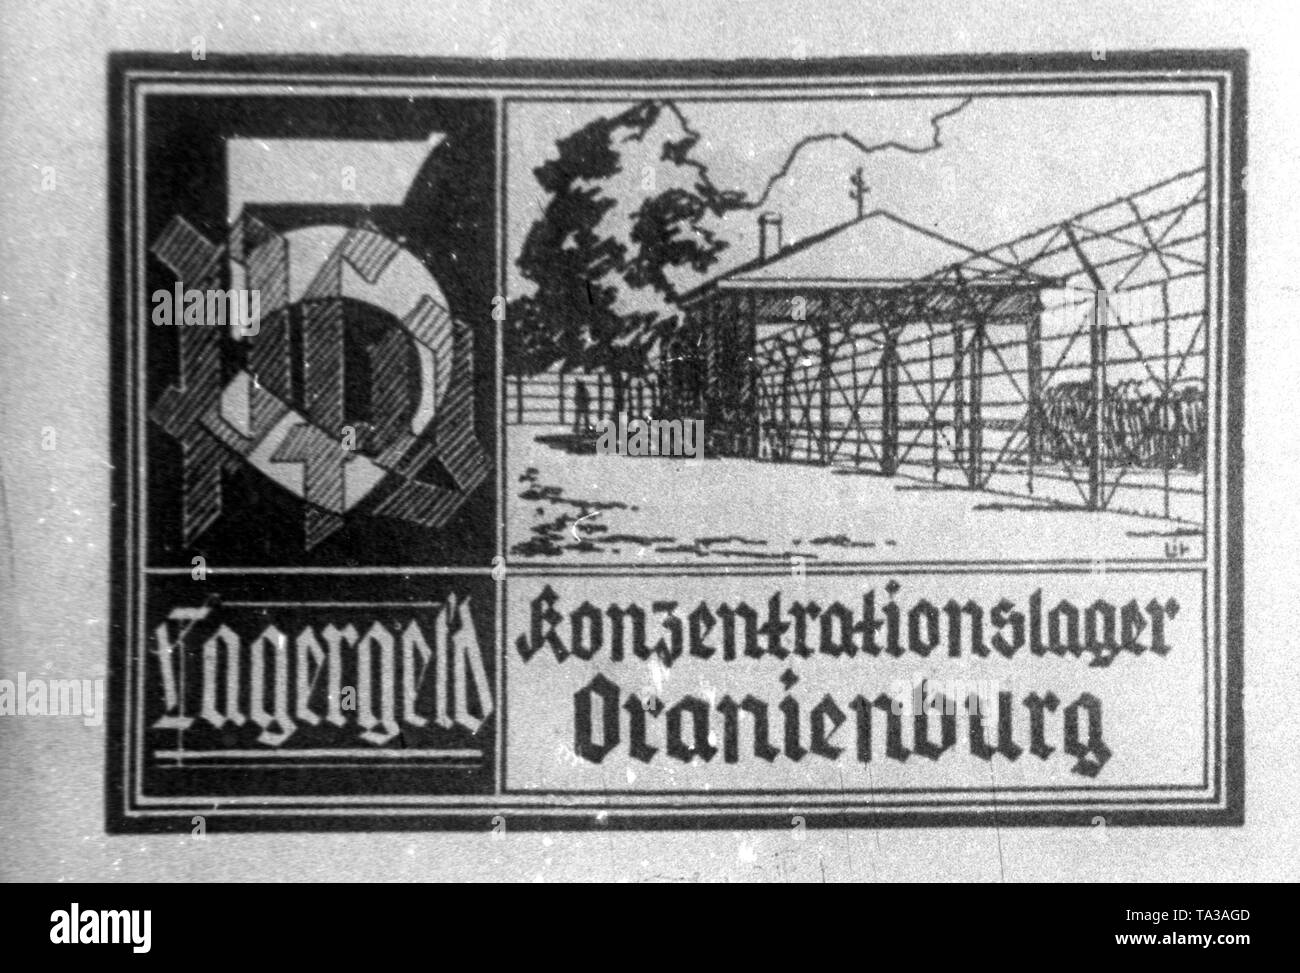 5 Pfennig campo di concentramento i soldi di Oranienburg campo di concentramento. Sulla fattura o token money è uno spaccato del campo recintato. Foto Stock